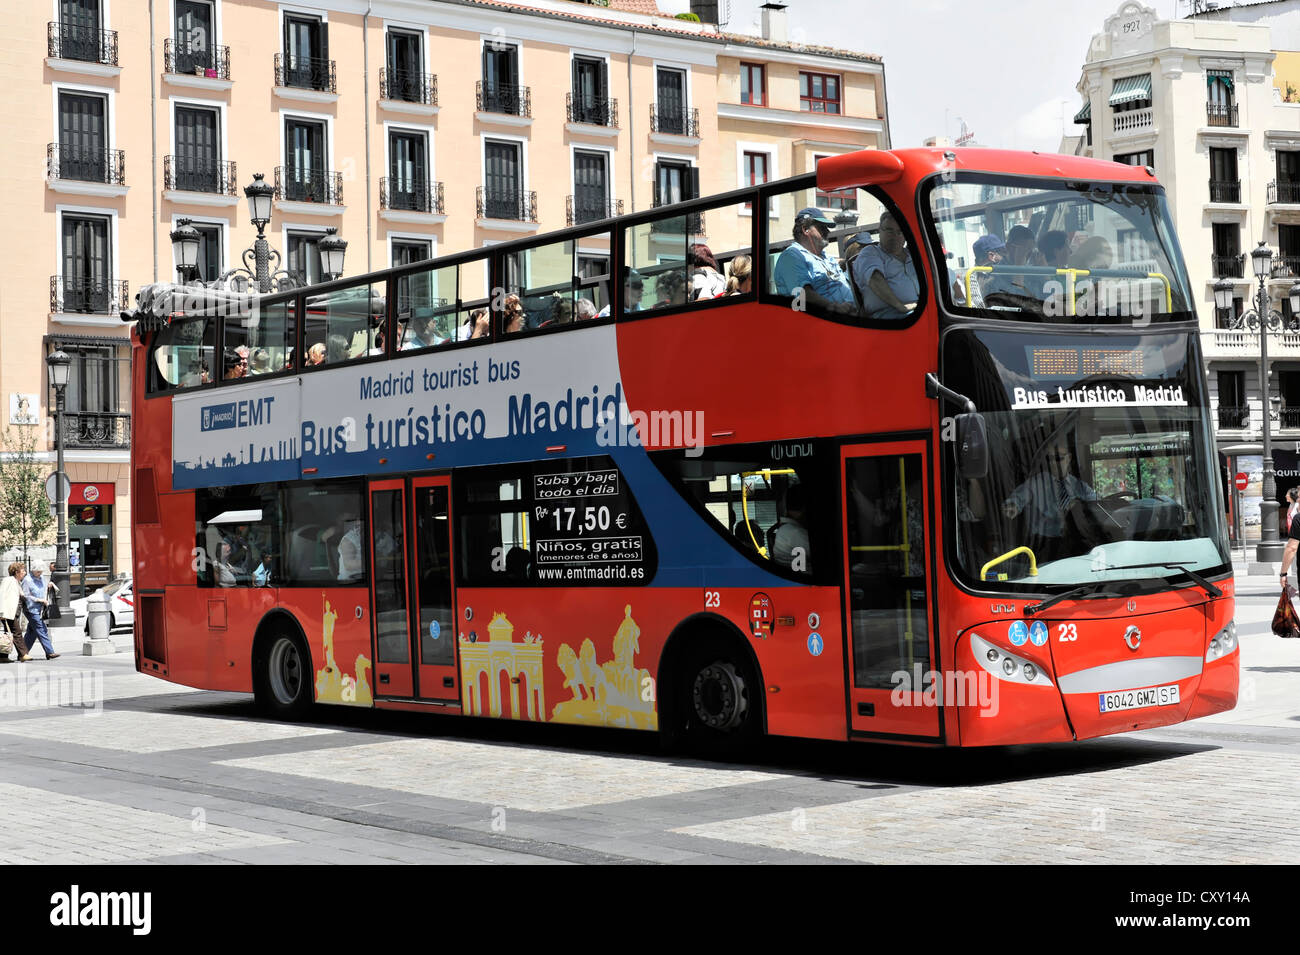 Bus turistico Madrid, tourist bus, Madrid, Spain, Europe Stock Photo